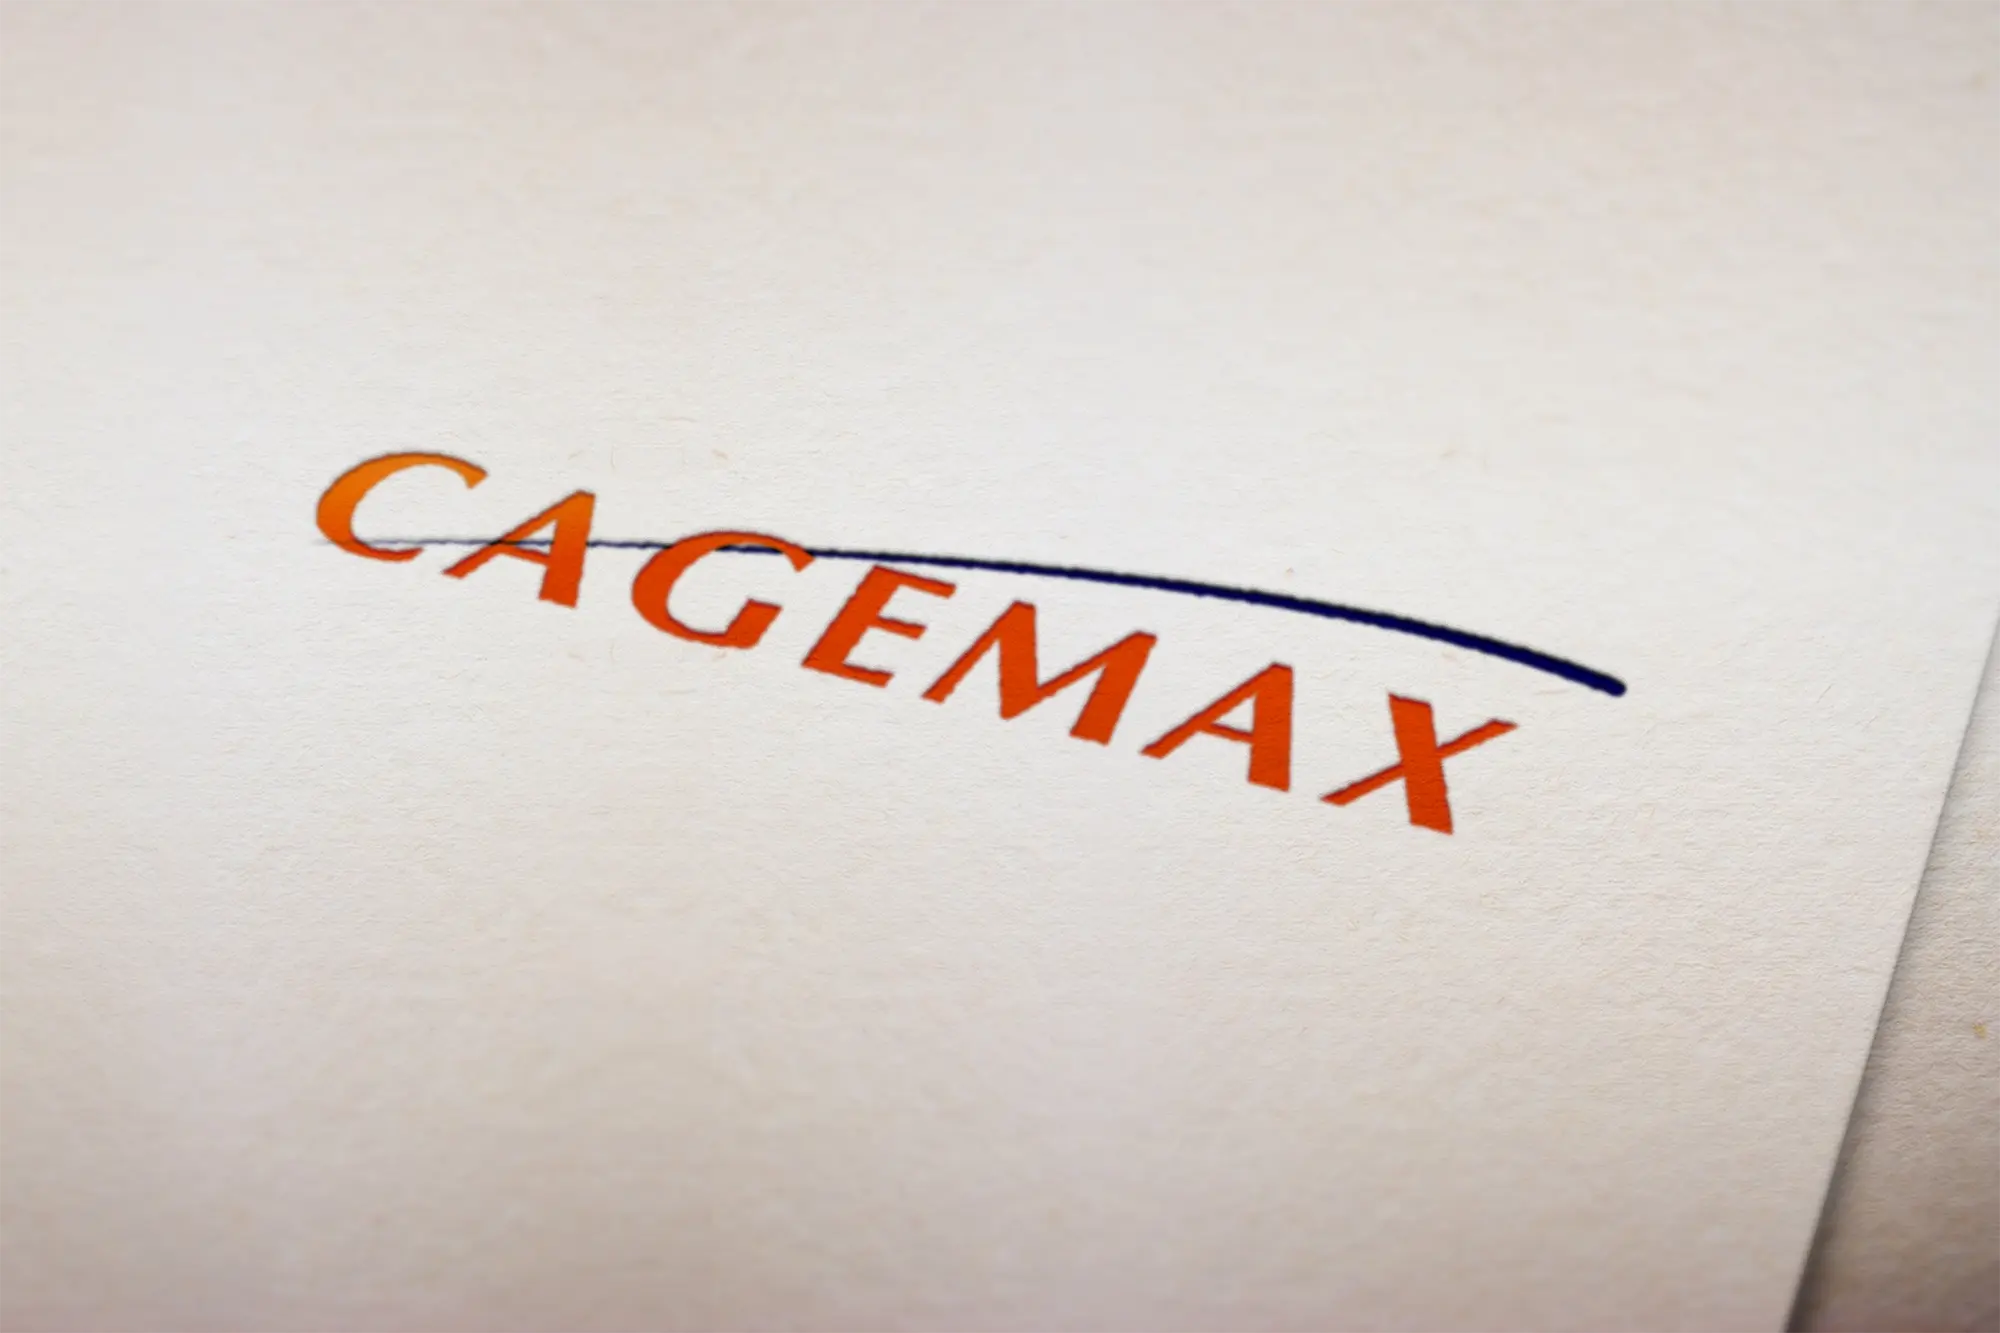 Cagemax: 25 anos de excelência na oferta de proteínas e gorduras de qualidade para o mercado animal é a nova associada da ABRA